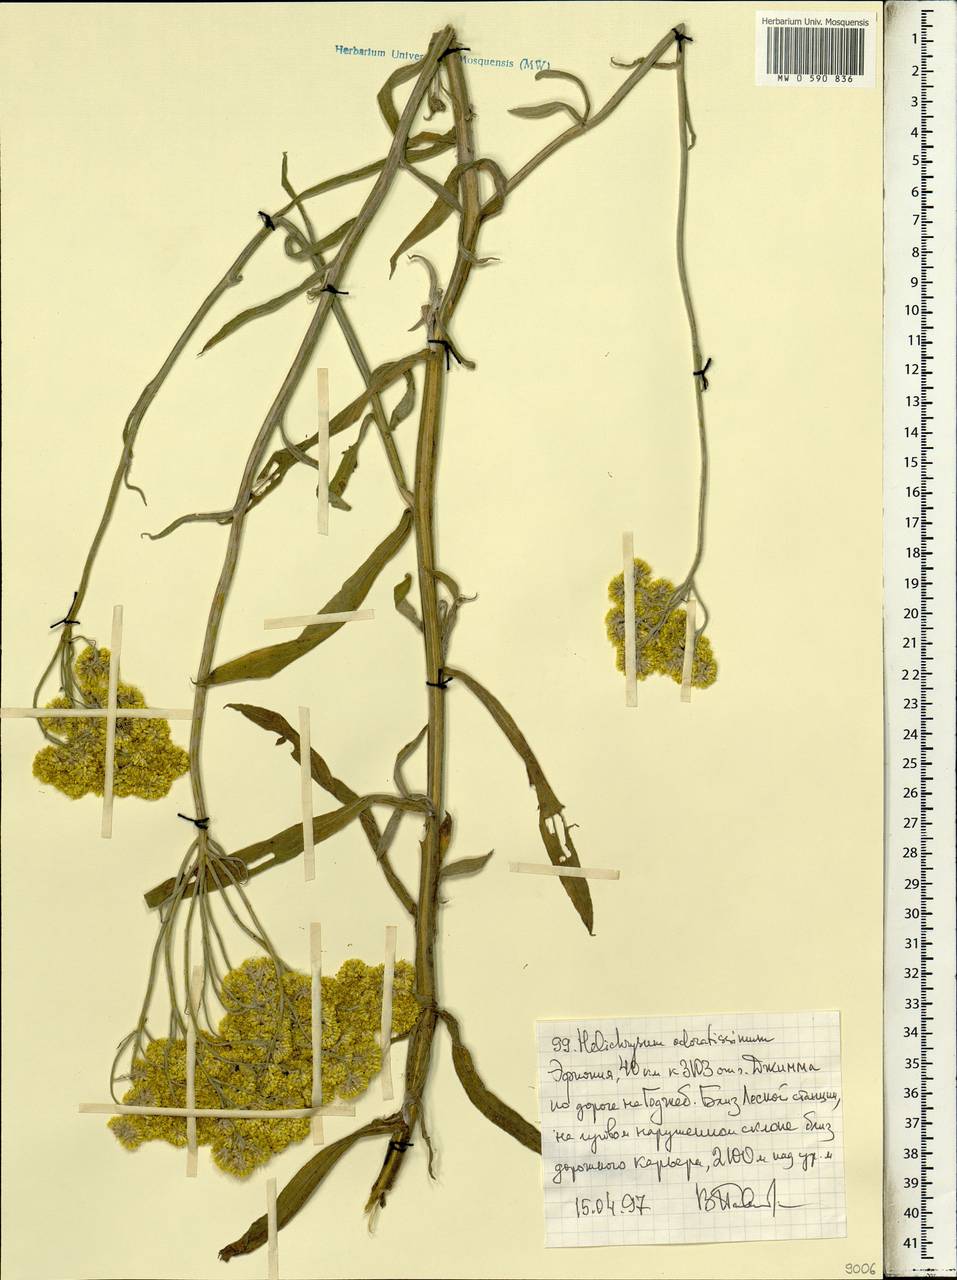 Helichrysum odoratissimum (L.) Sw., Африка (AFR) (Эфиопия)